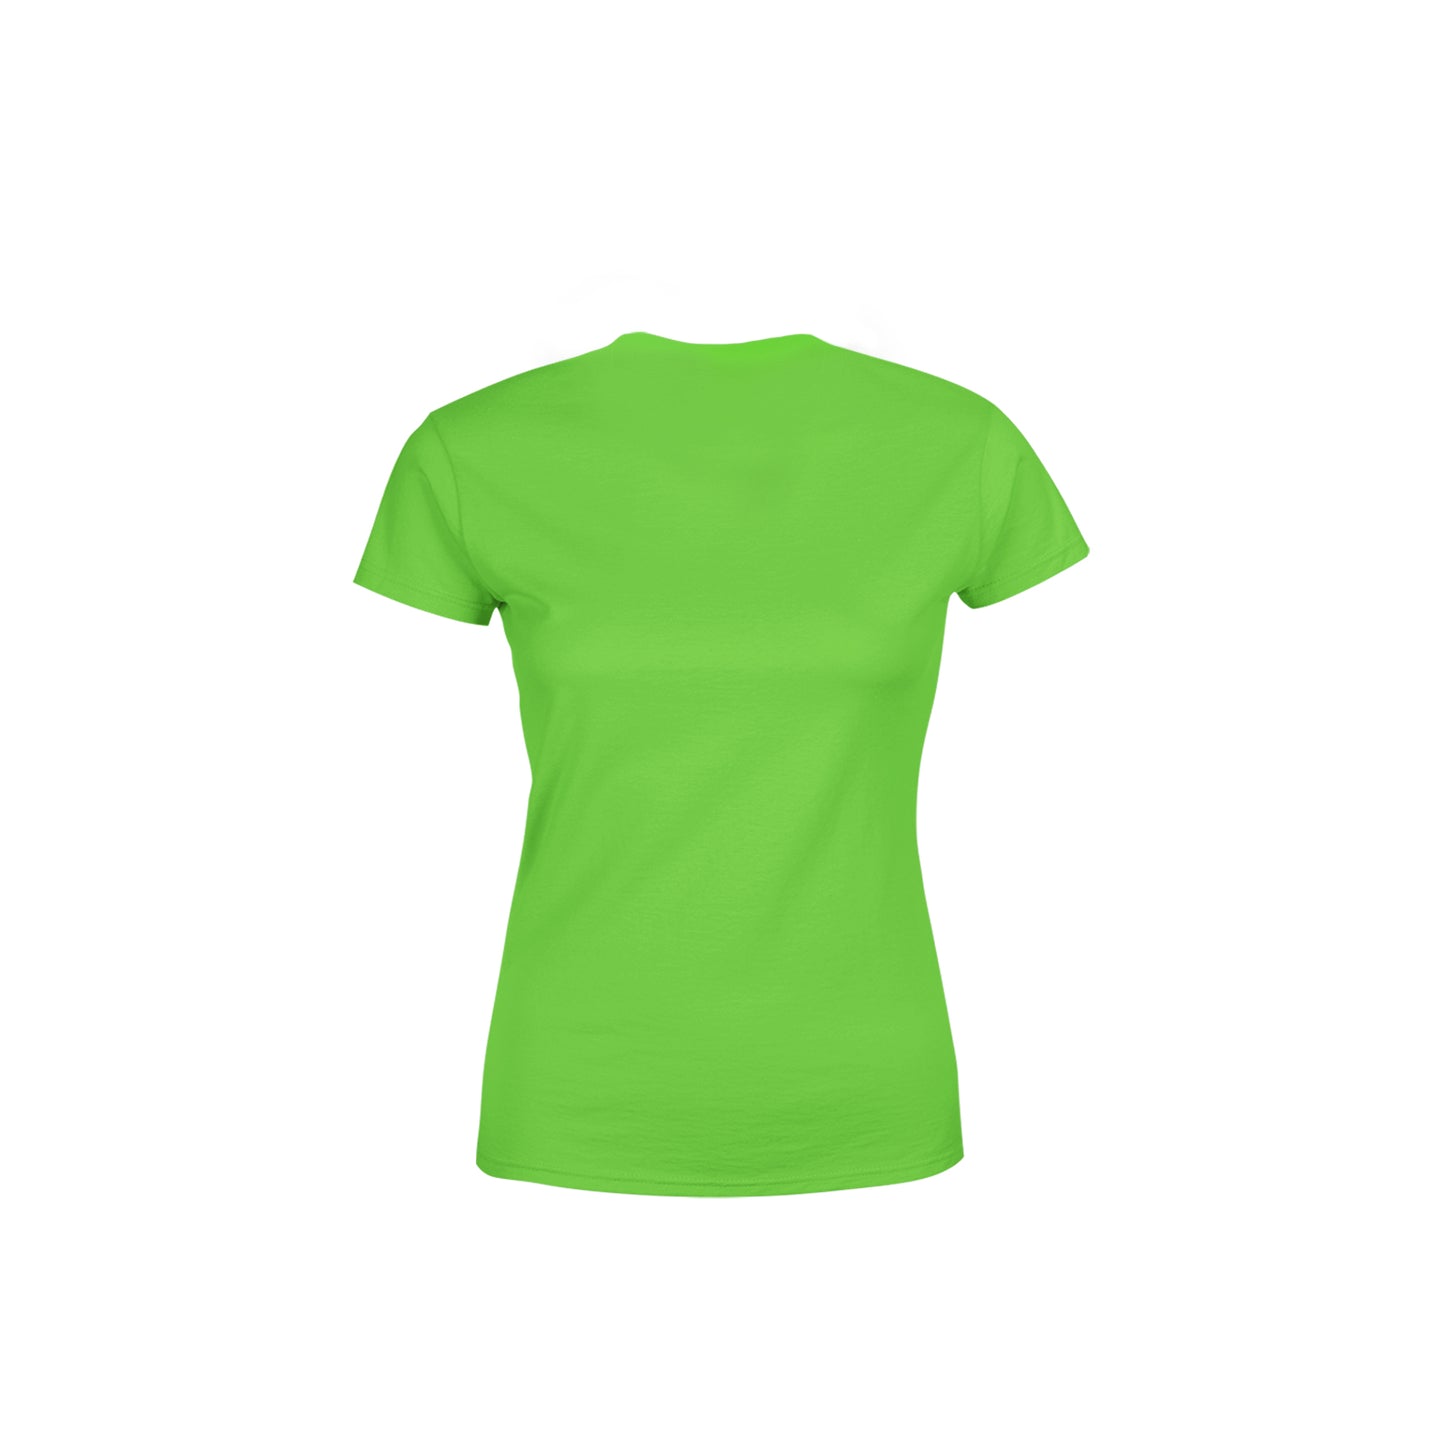 04 Number Women's T-Shirt (Liril Green)